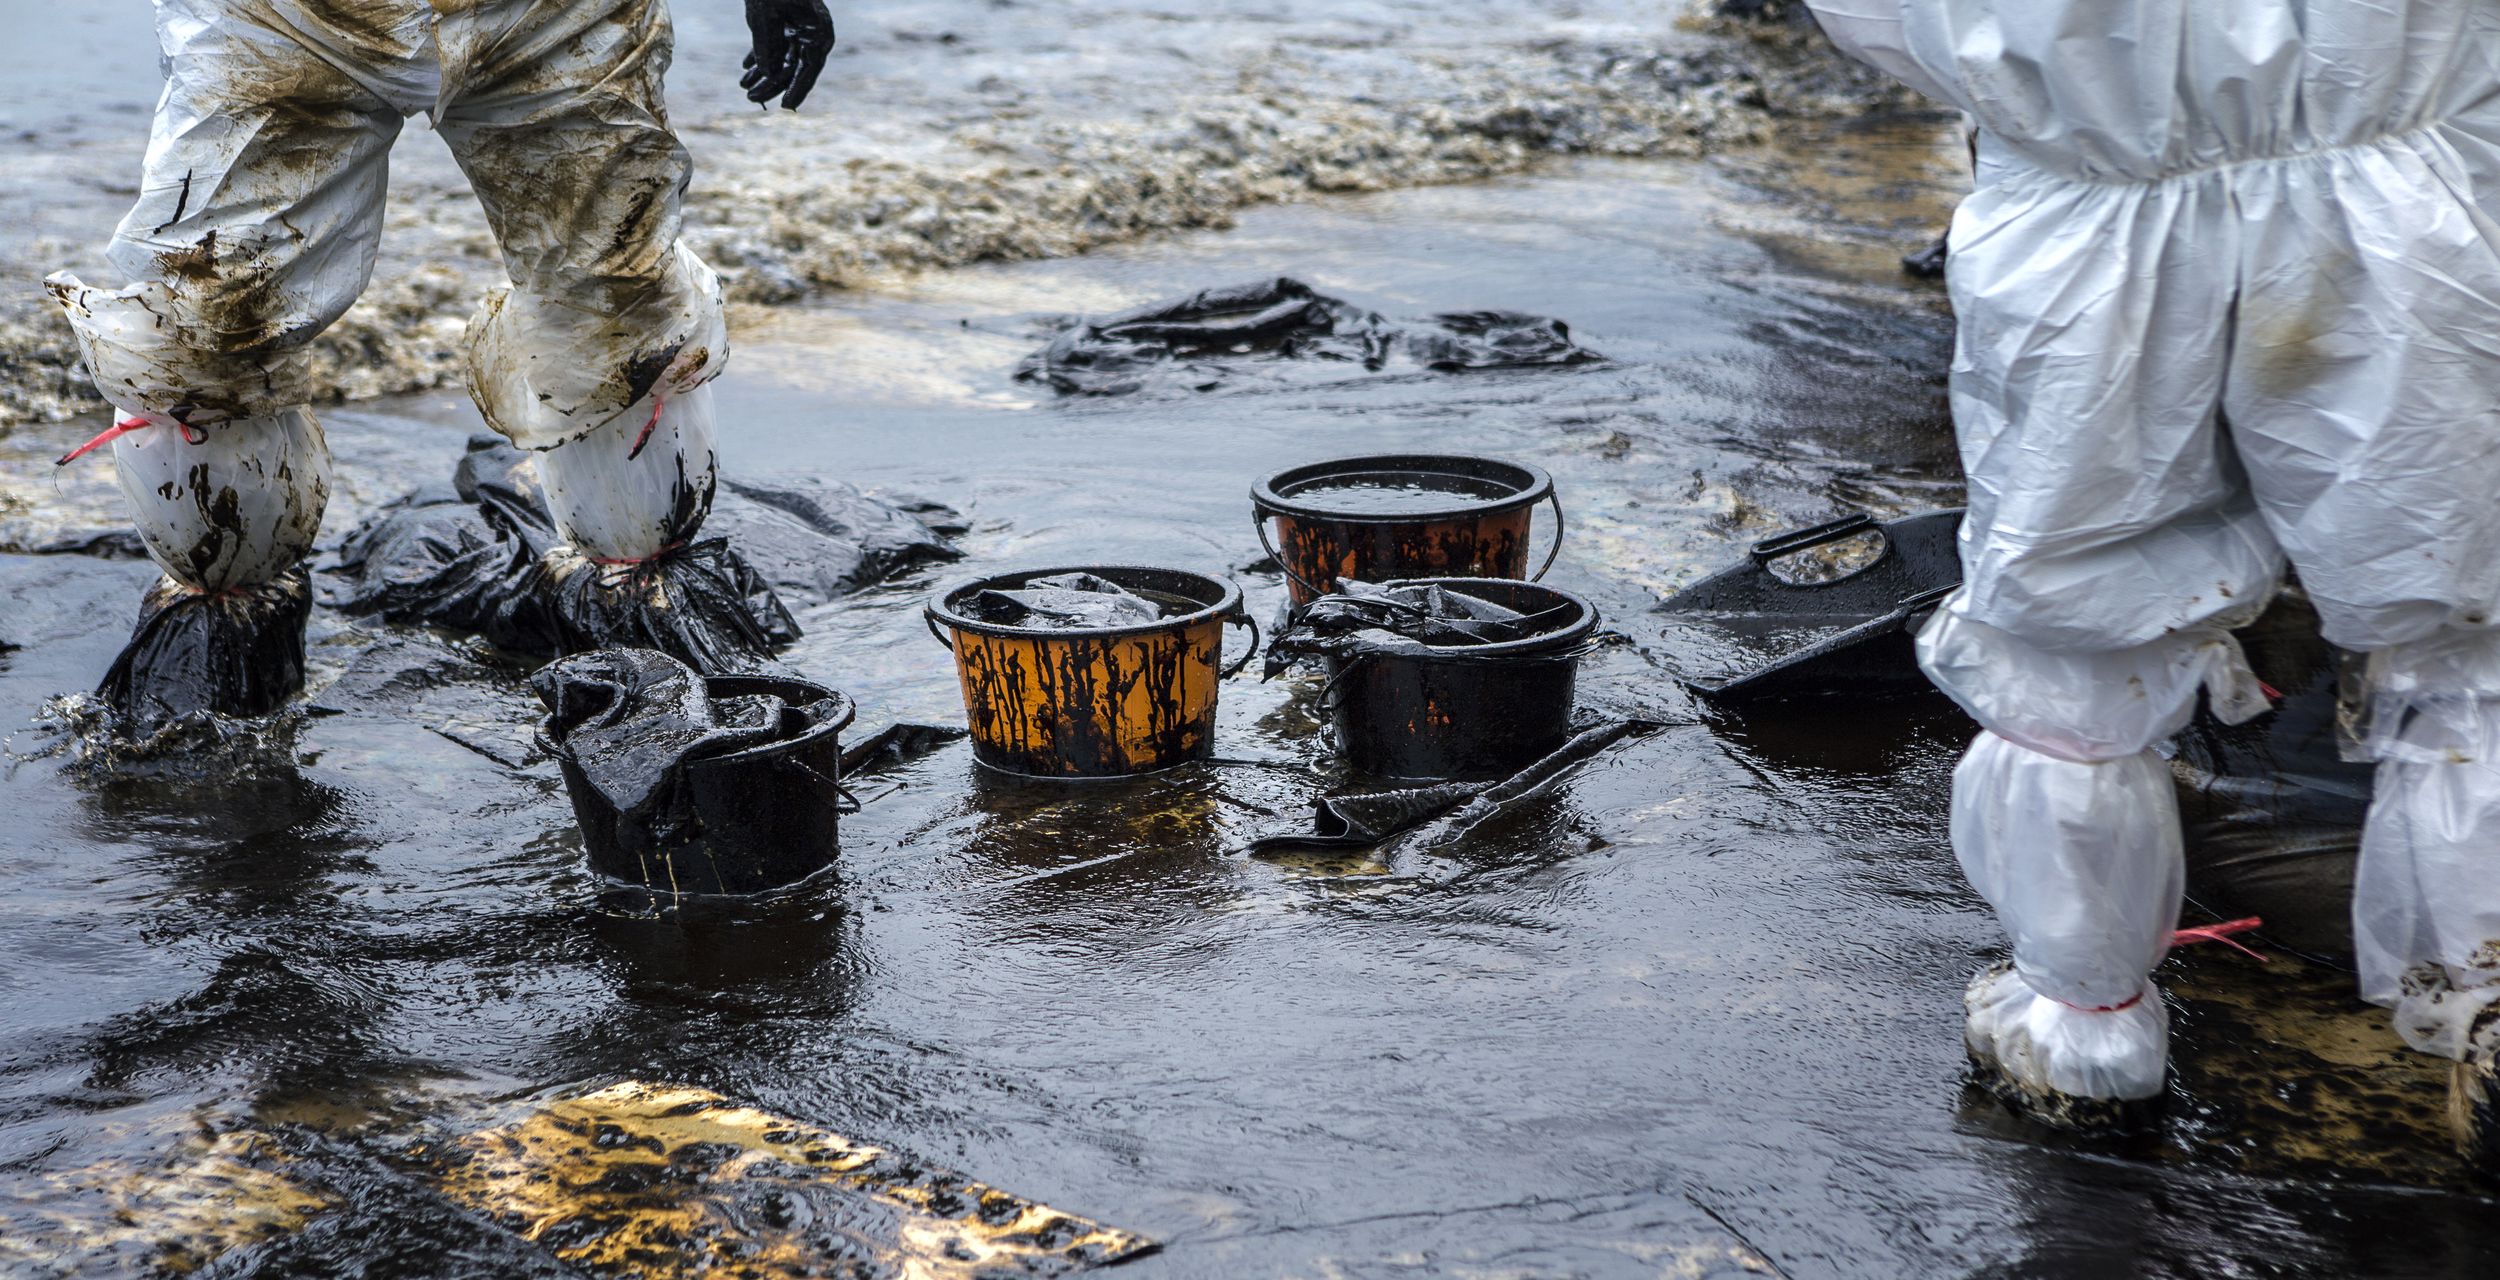 Des unités HazMat écopent le pétrole ayant submergé une plage lors d'une marée noire. © jukuraesamurai